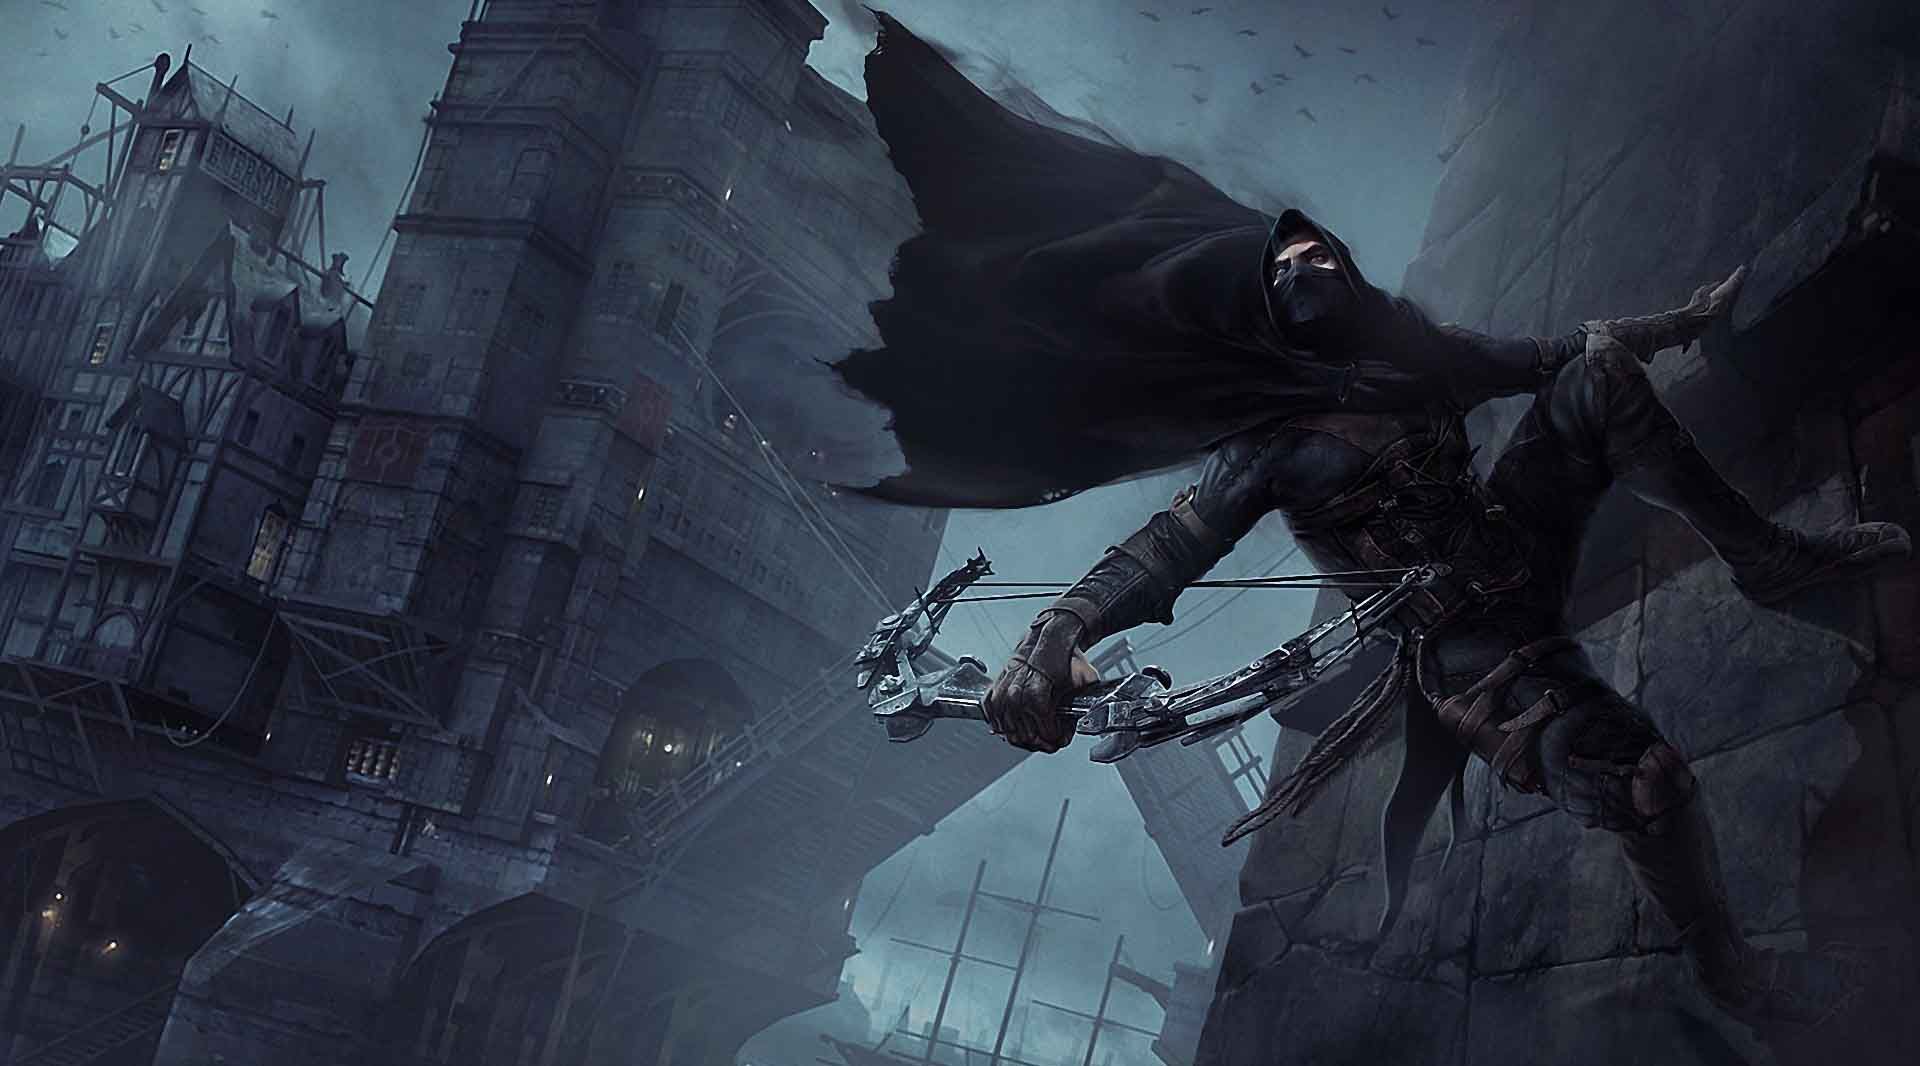 《神偷》系列游戏将改编电影 故事设定将为黑暗幻想